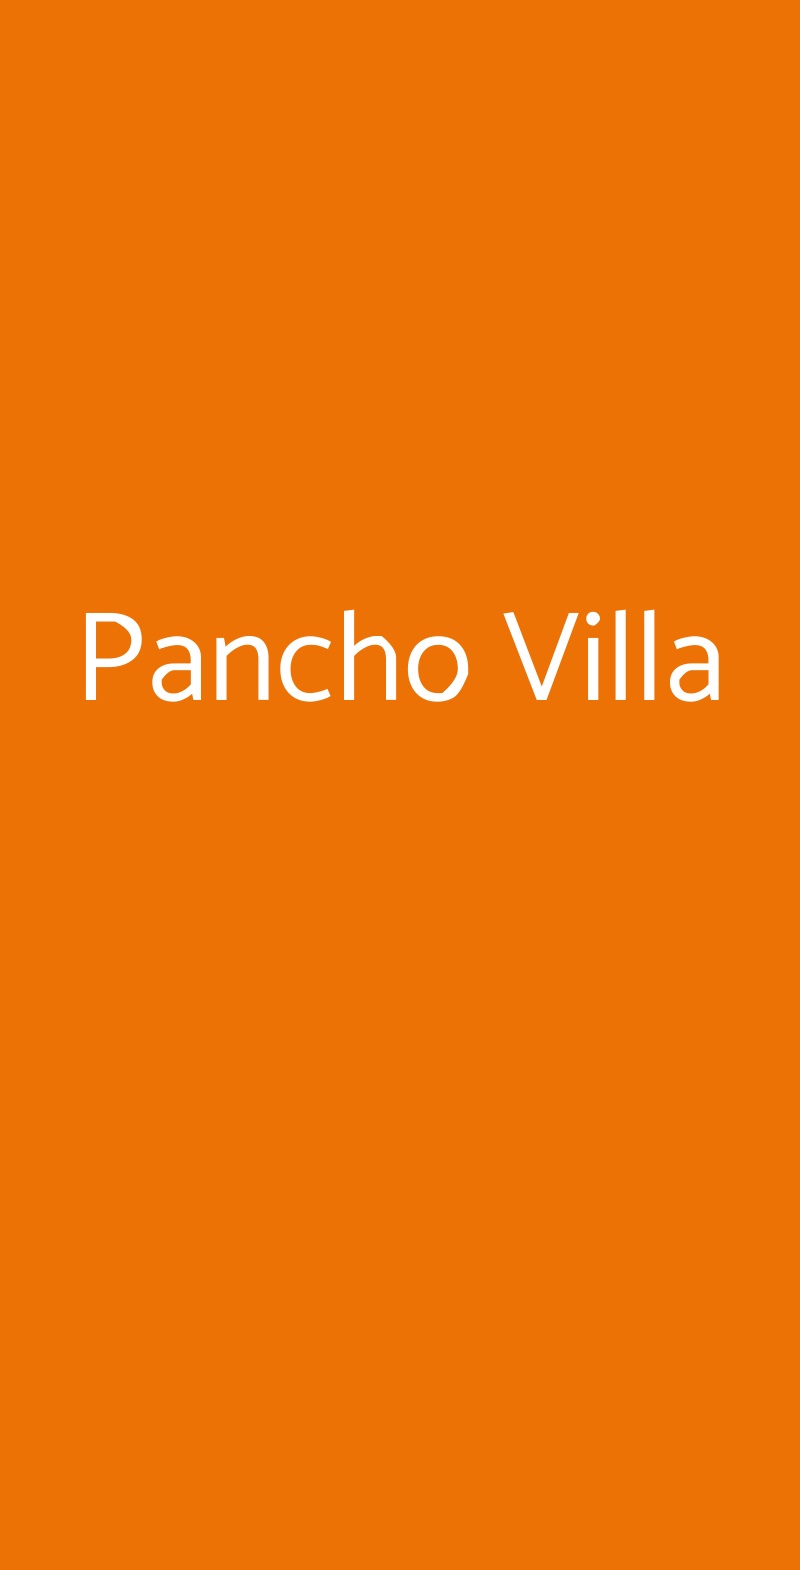 Pancho Villa Milano menù 1 pagina